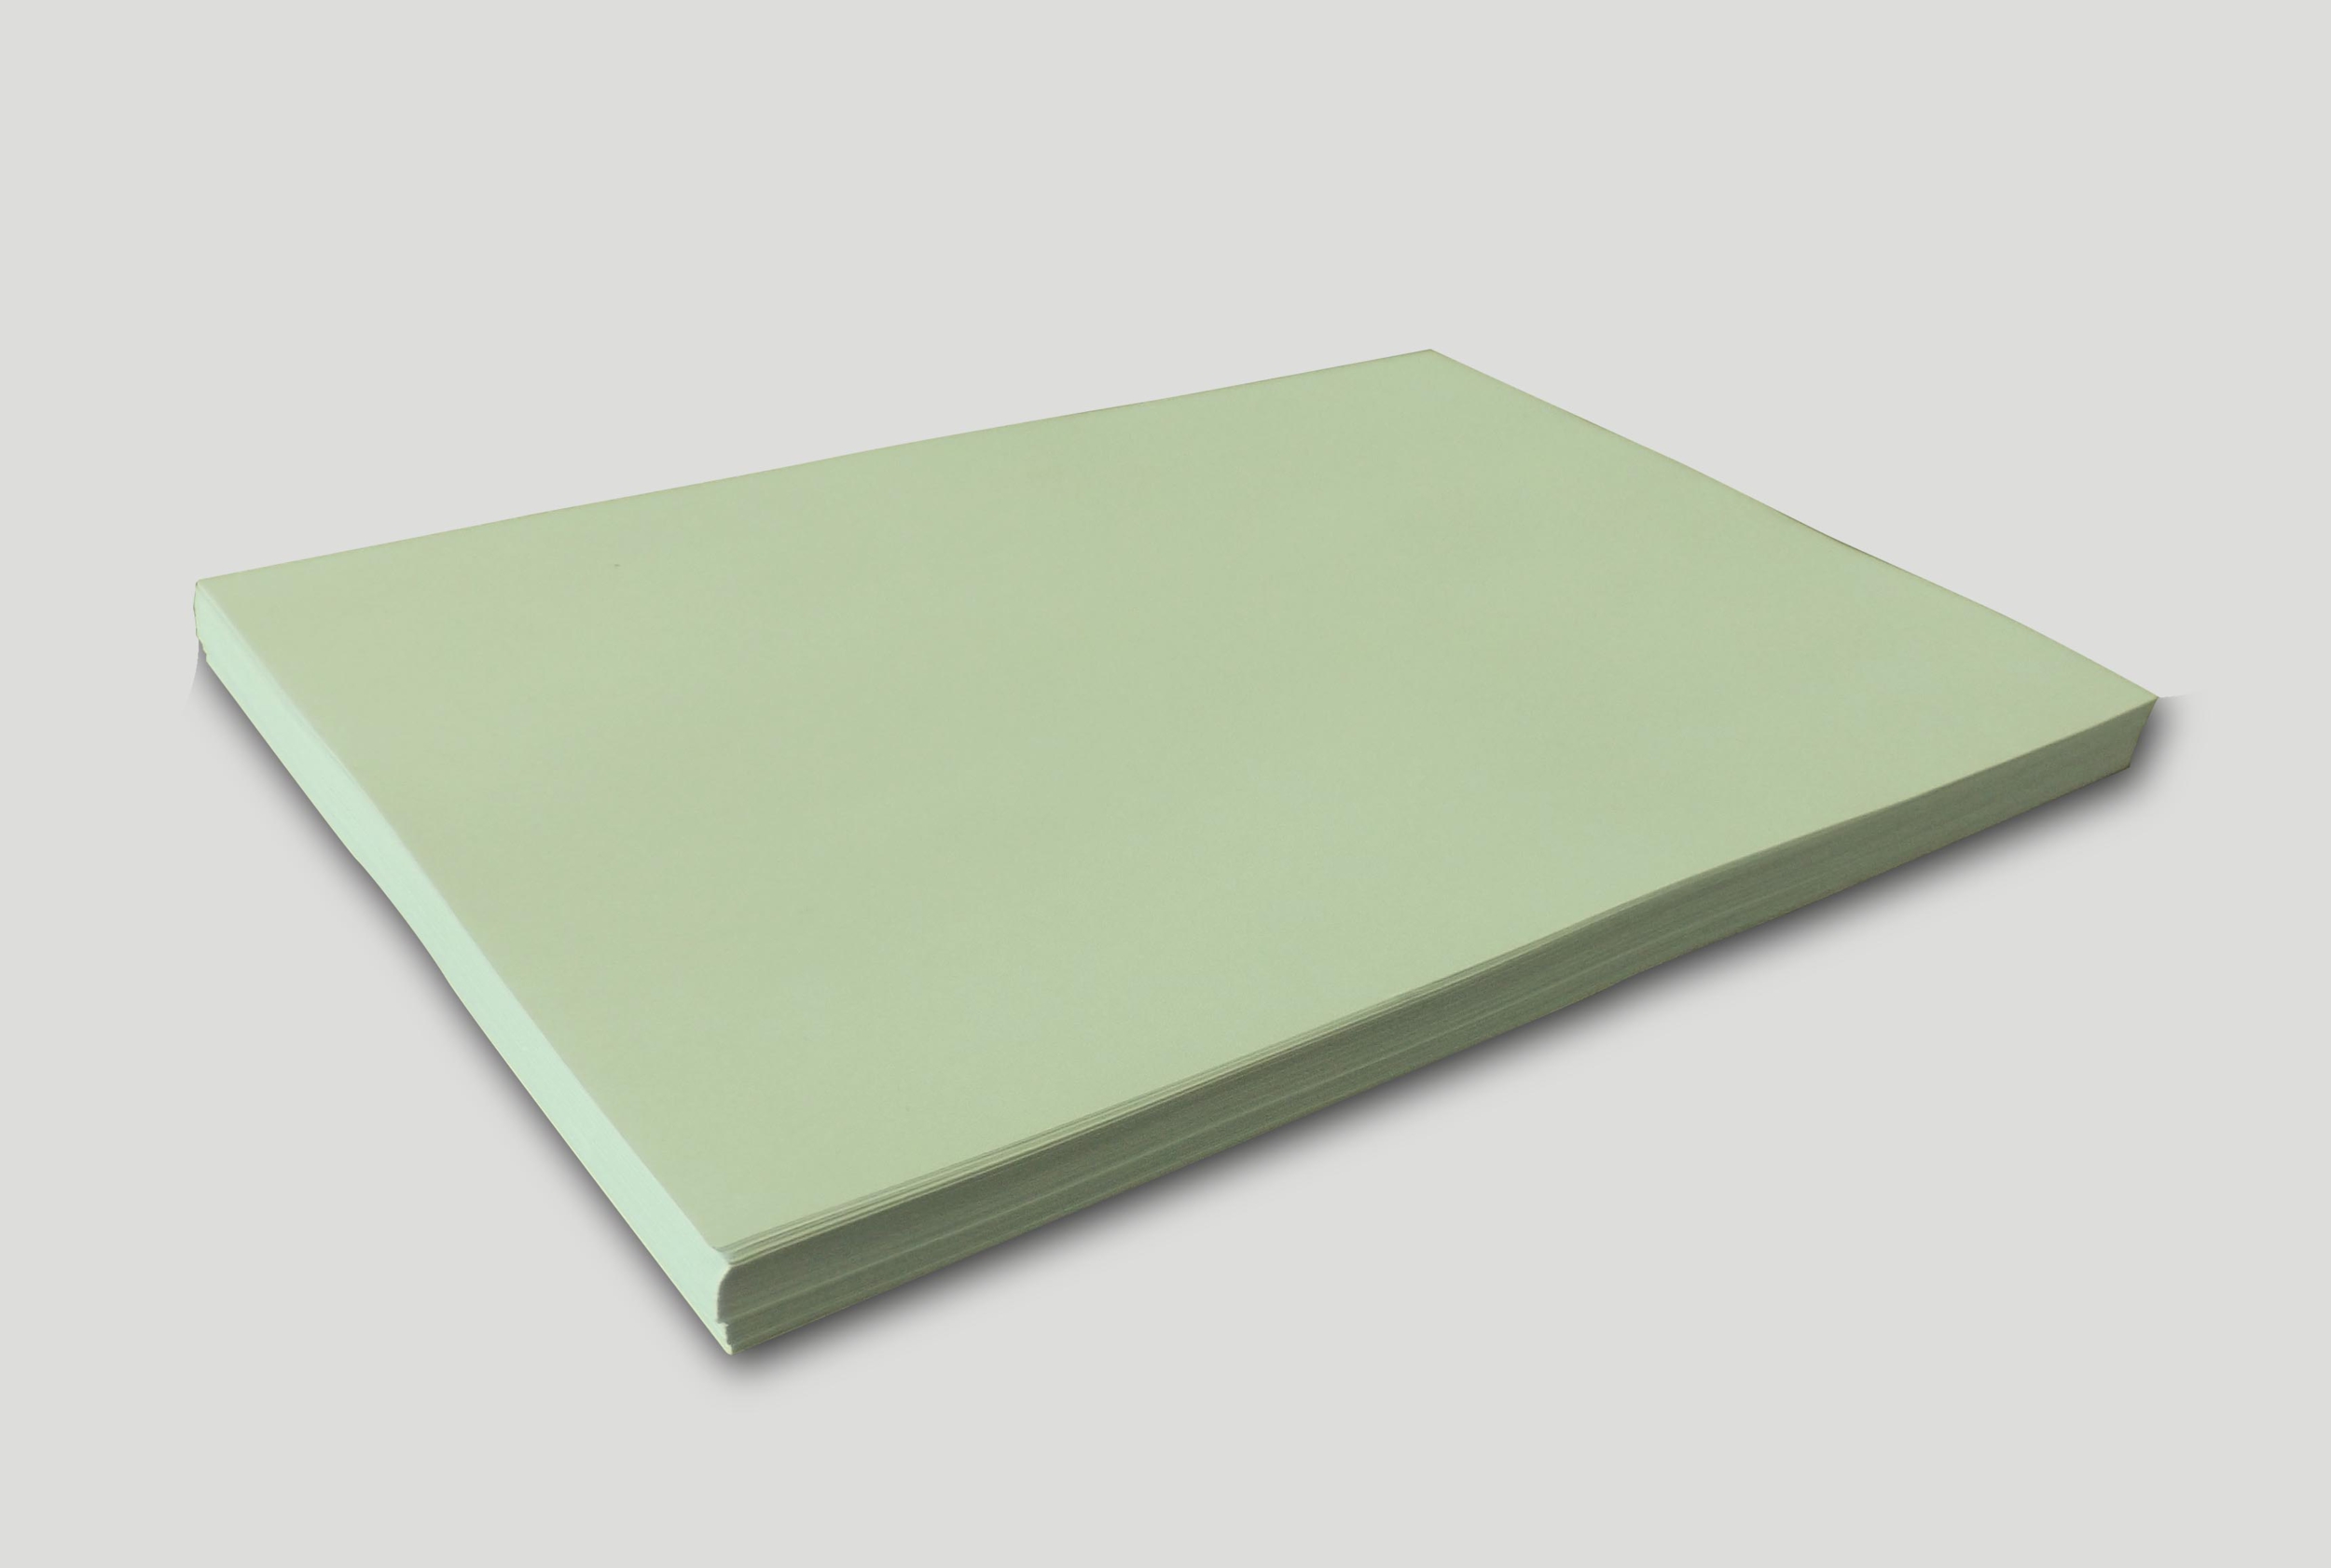 Papier blanc indéchirable A3 - 100 feuilles - Équipements